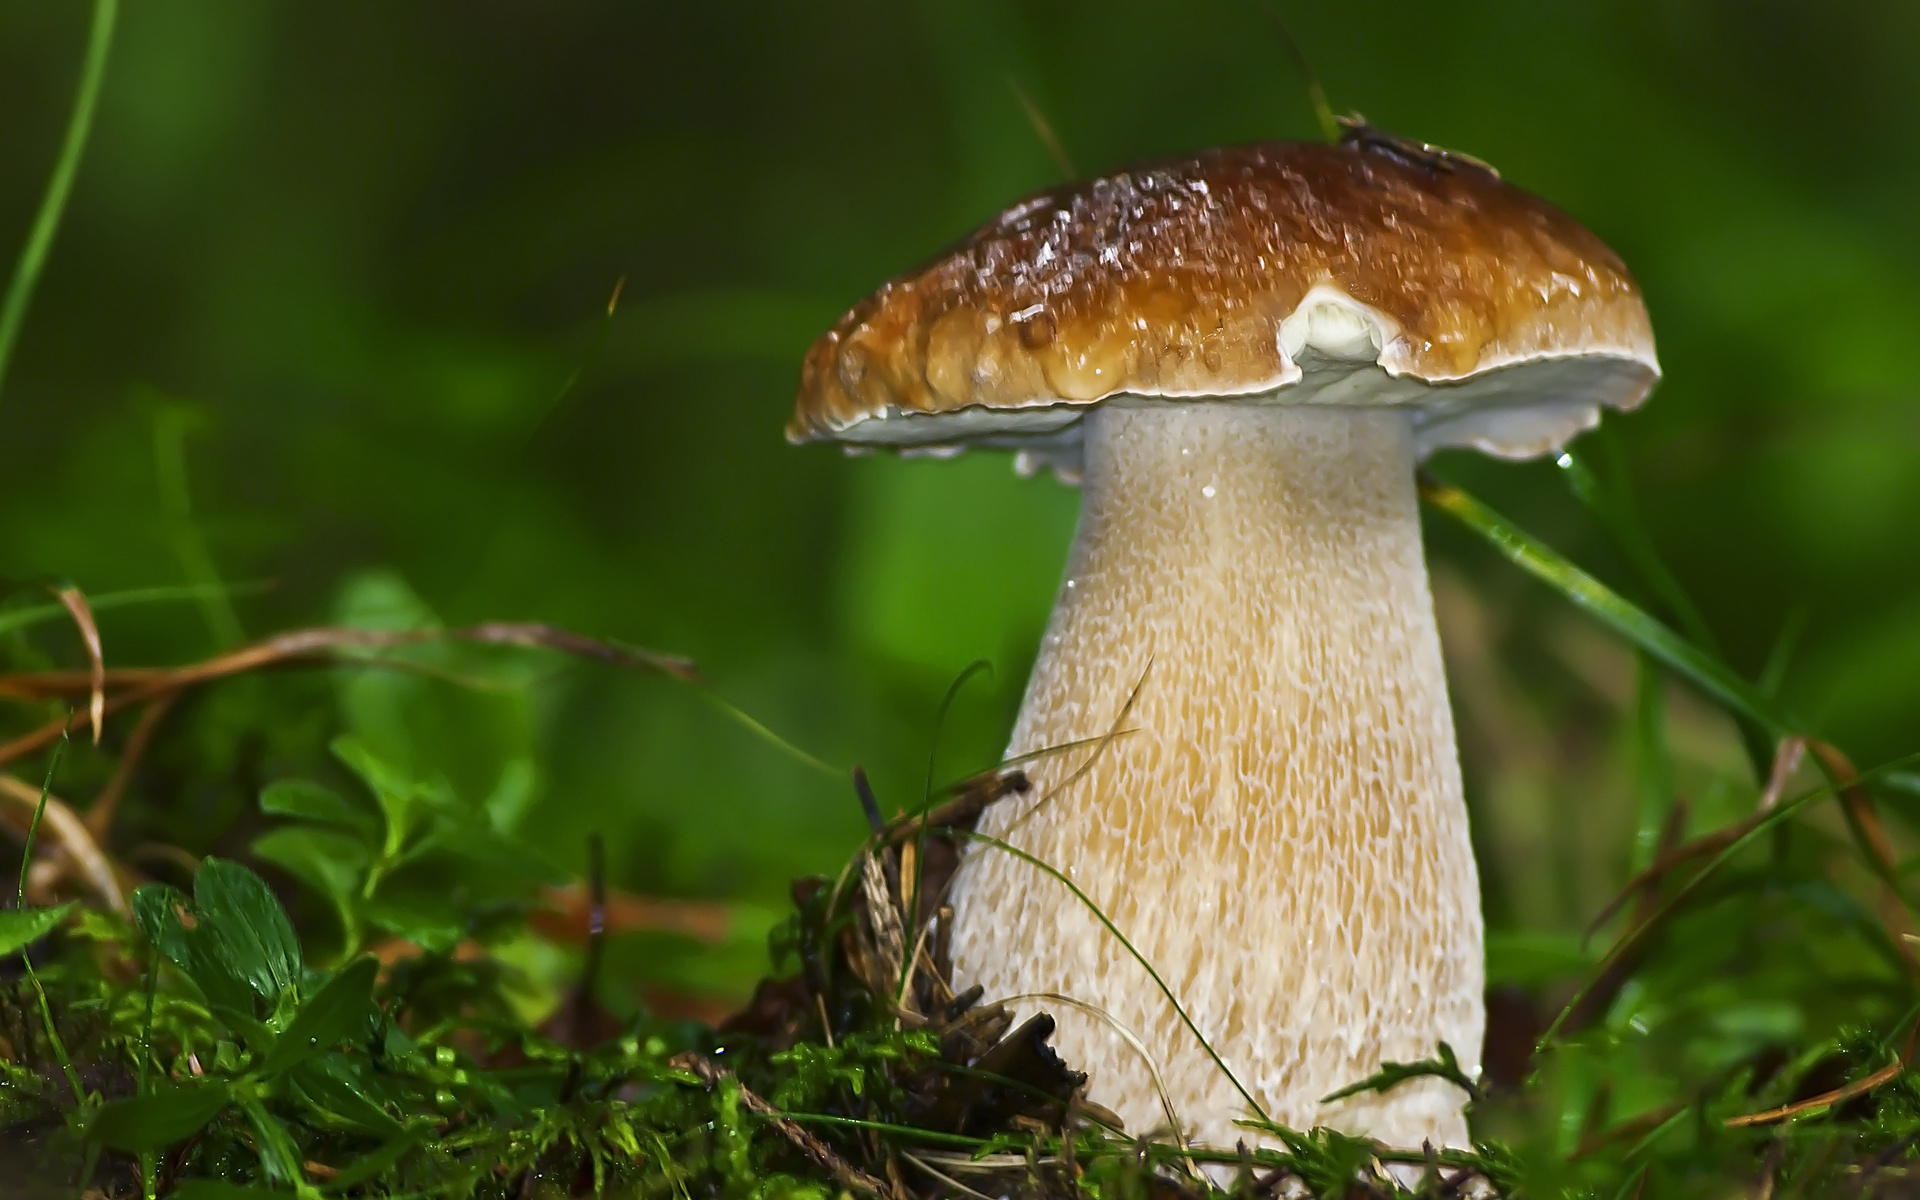 Mushroom closeup photo